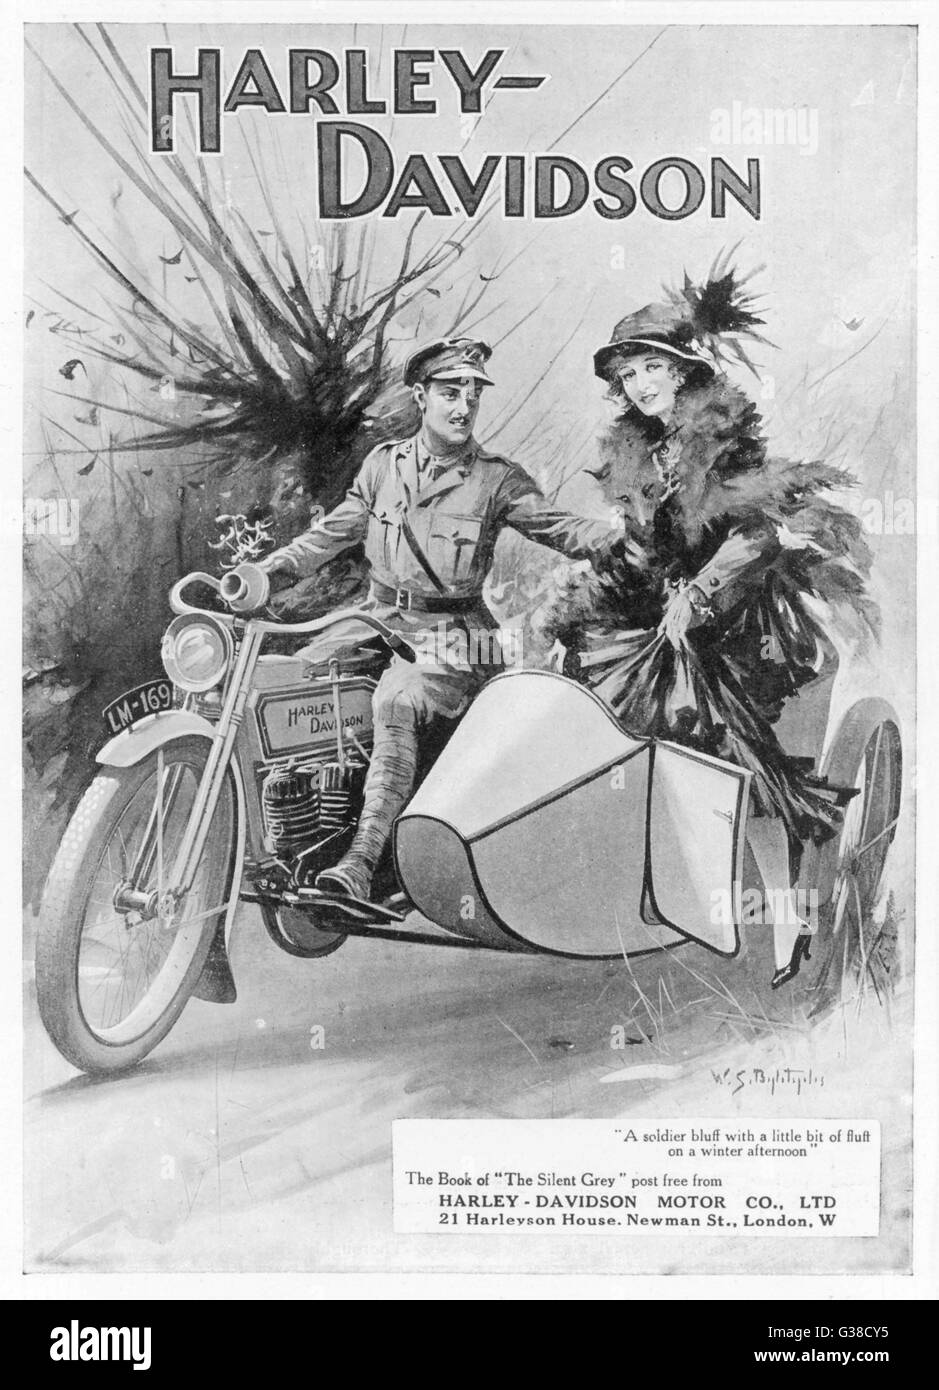 Eine Werbung für Harley - Davidson, zeigt einen Soldaten unter seiner Freundin für eine Fahrt.       Datum: 1915 Stockfoto